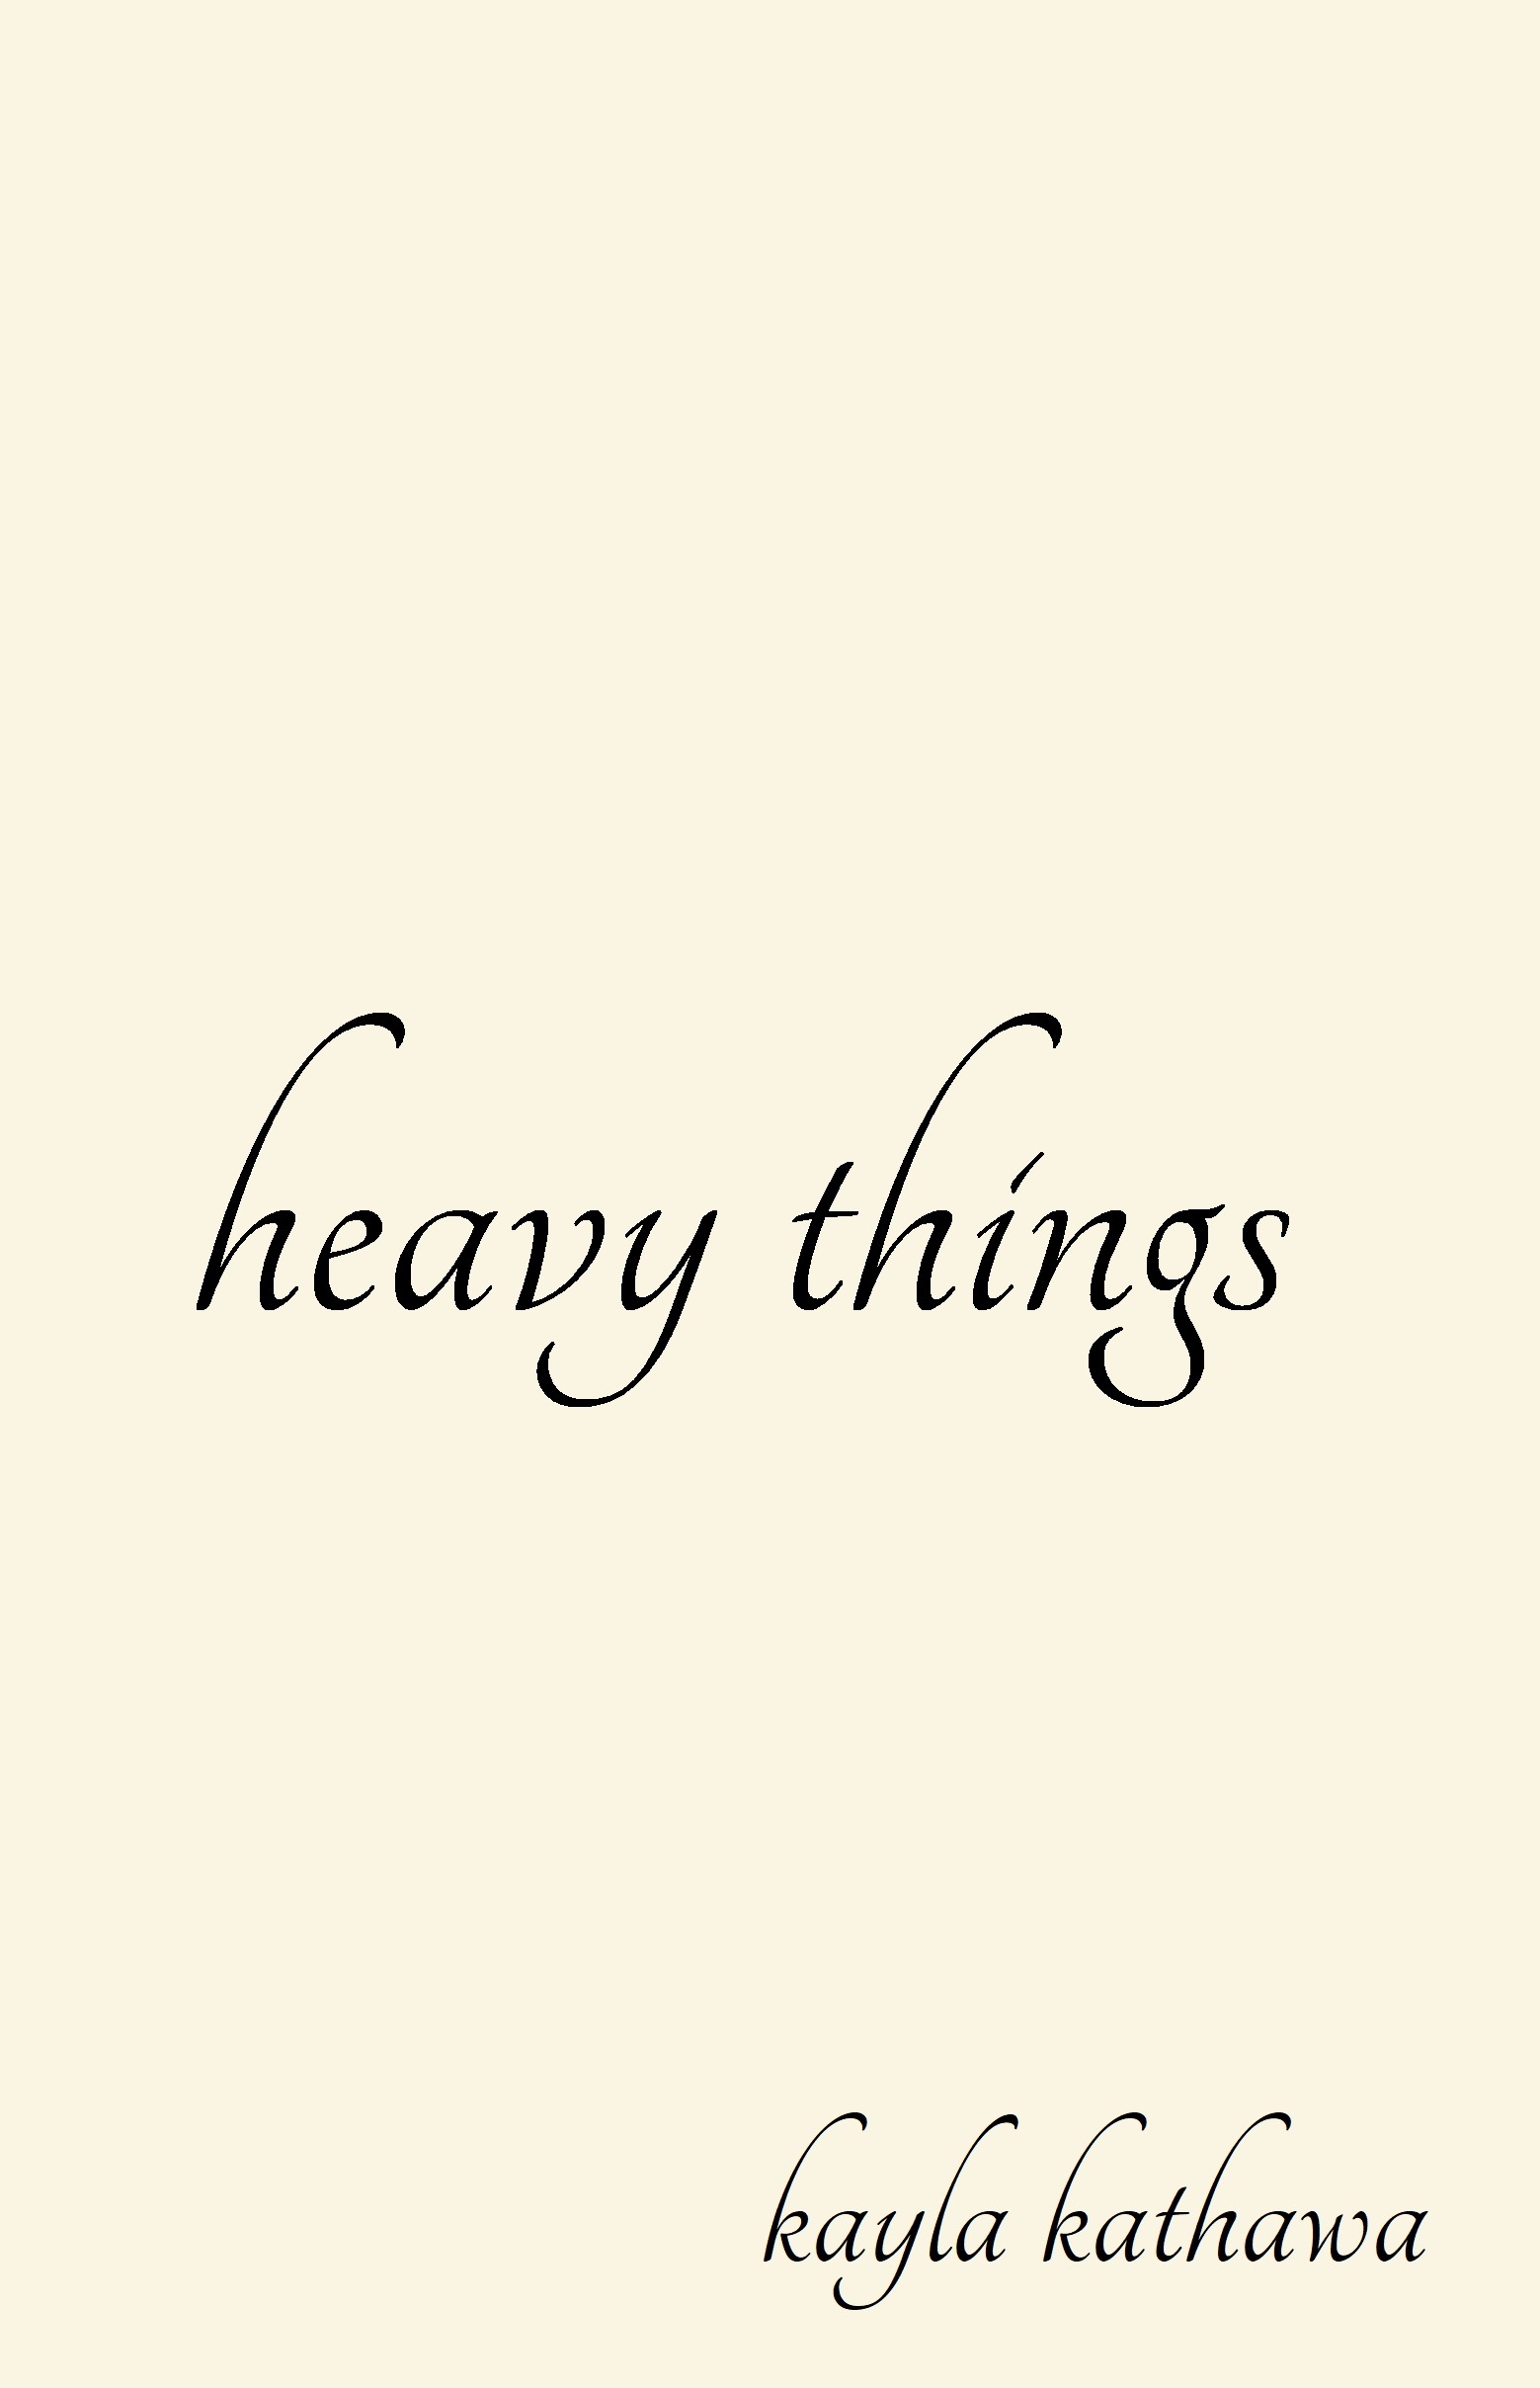 FREE: Heavy Things by Kayla Kathawa